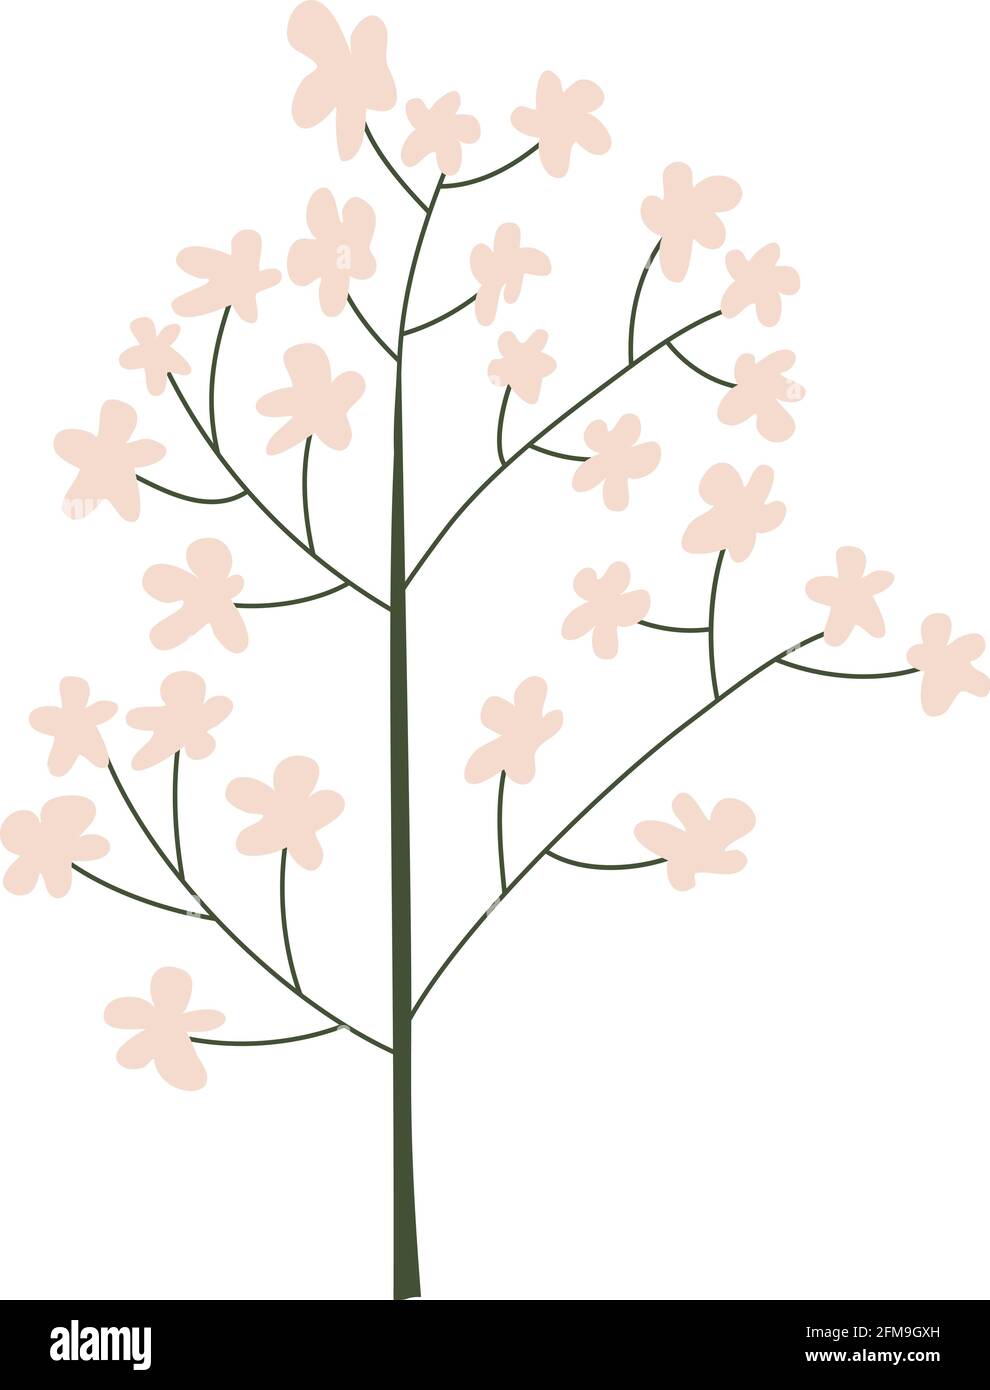 Fiore sakura primavera stilizzato vettoriale. Illustrazione scandinava art elemento estivo. Immagine floreale estate decorativa per il saluto Valentine Card o. Illustrazione Vettoriale